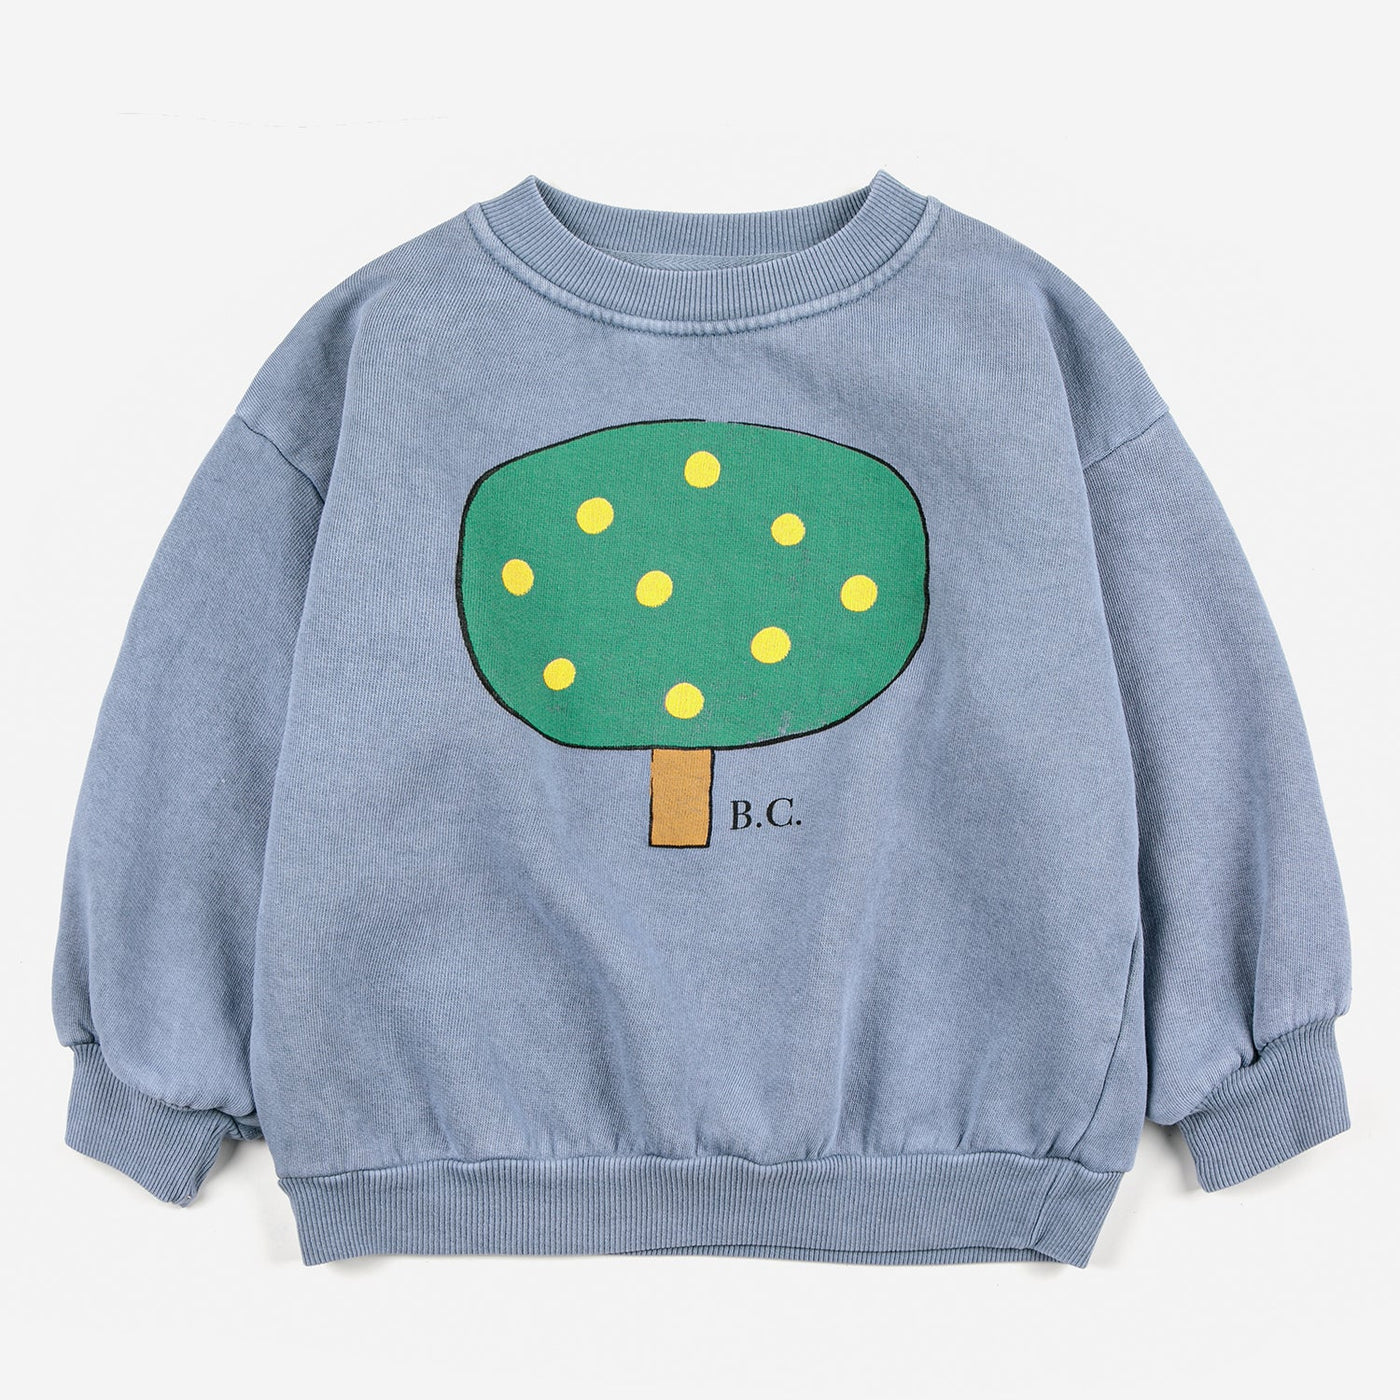 Green Tree Sweatshirt by Bobo Choses - Petite Belle